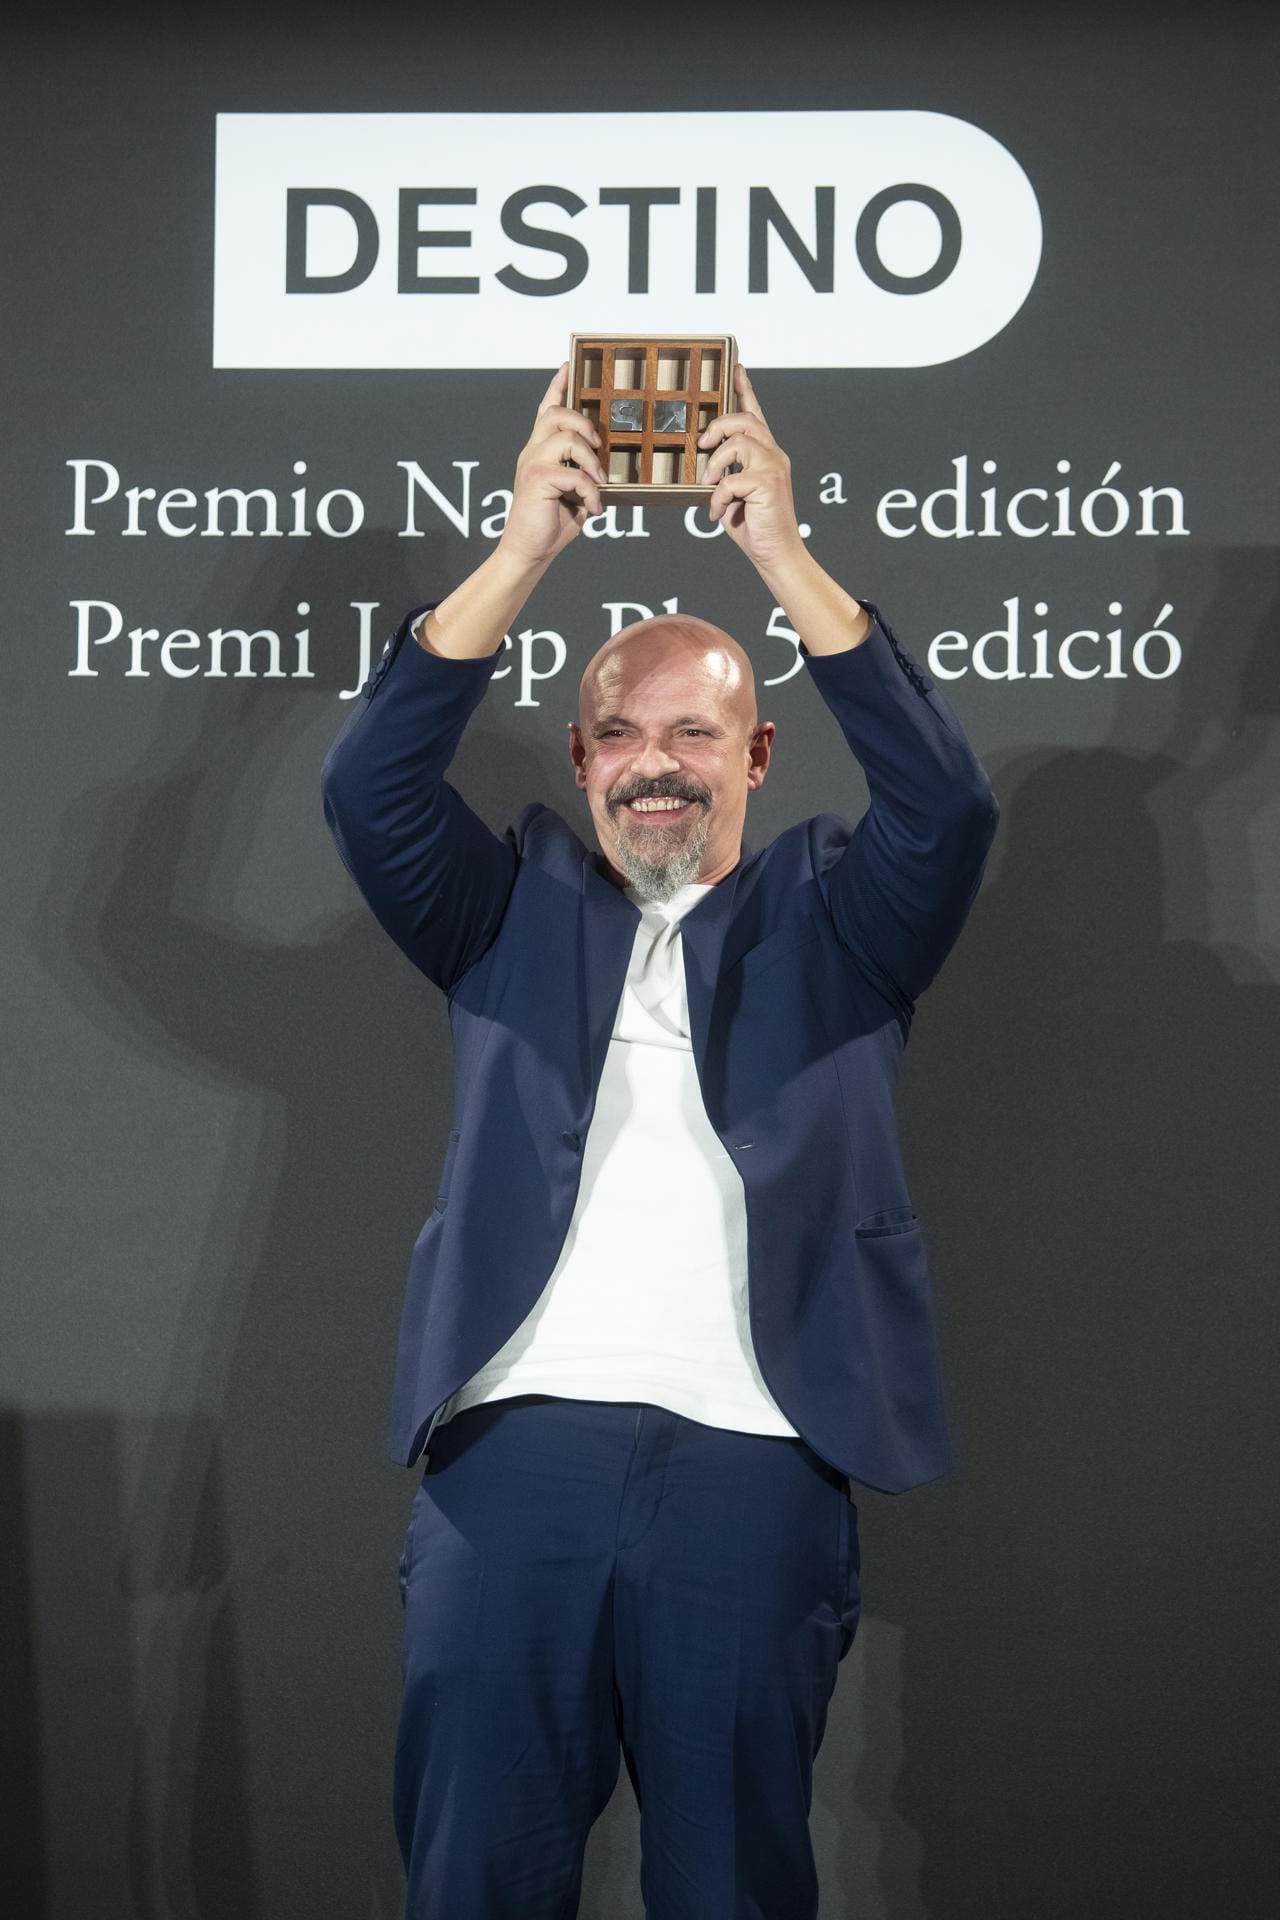 César Pérez Gellida gana el 80 Premio Nadal con la novela Bajo tierra seca